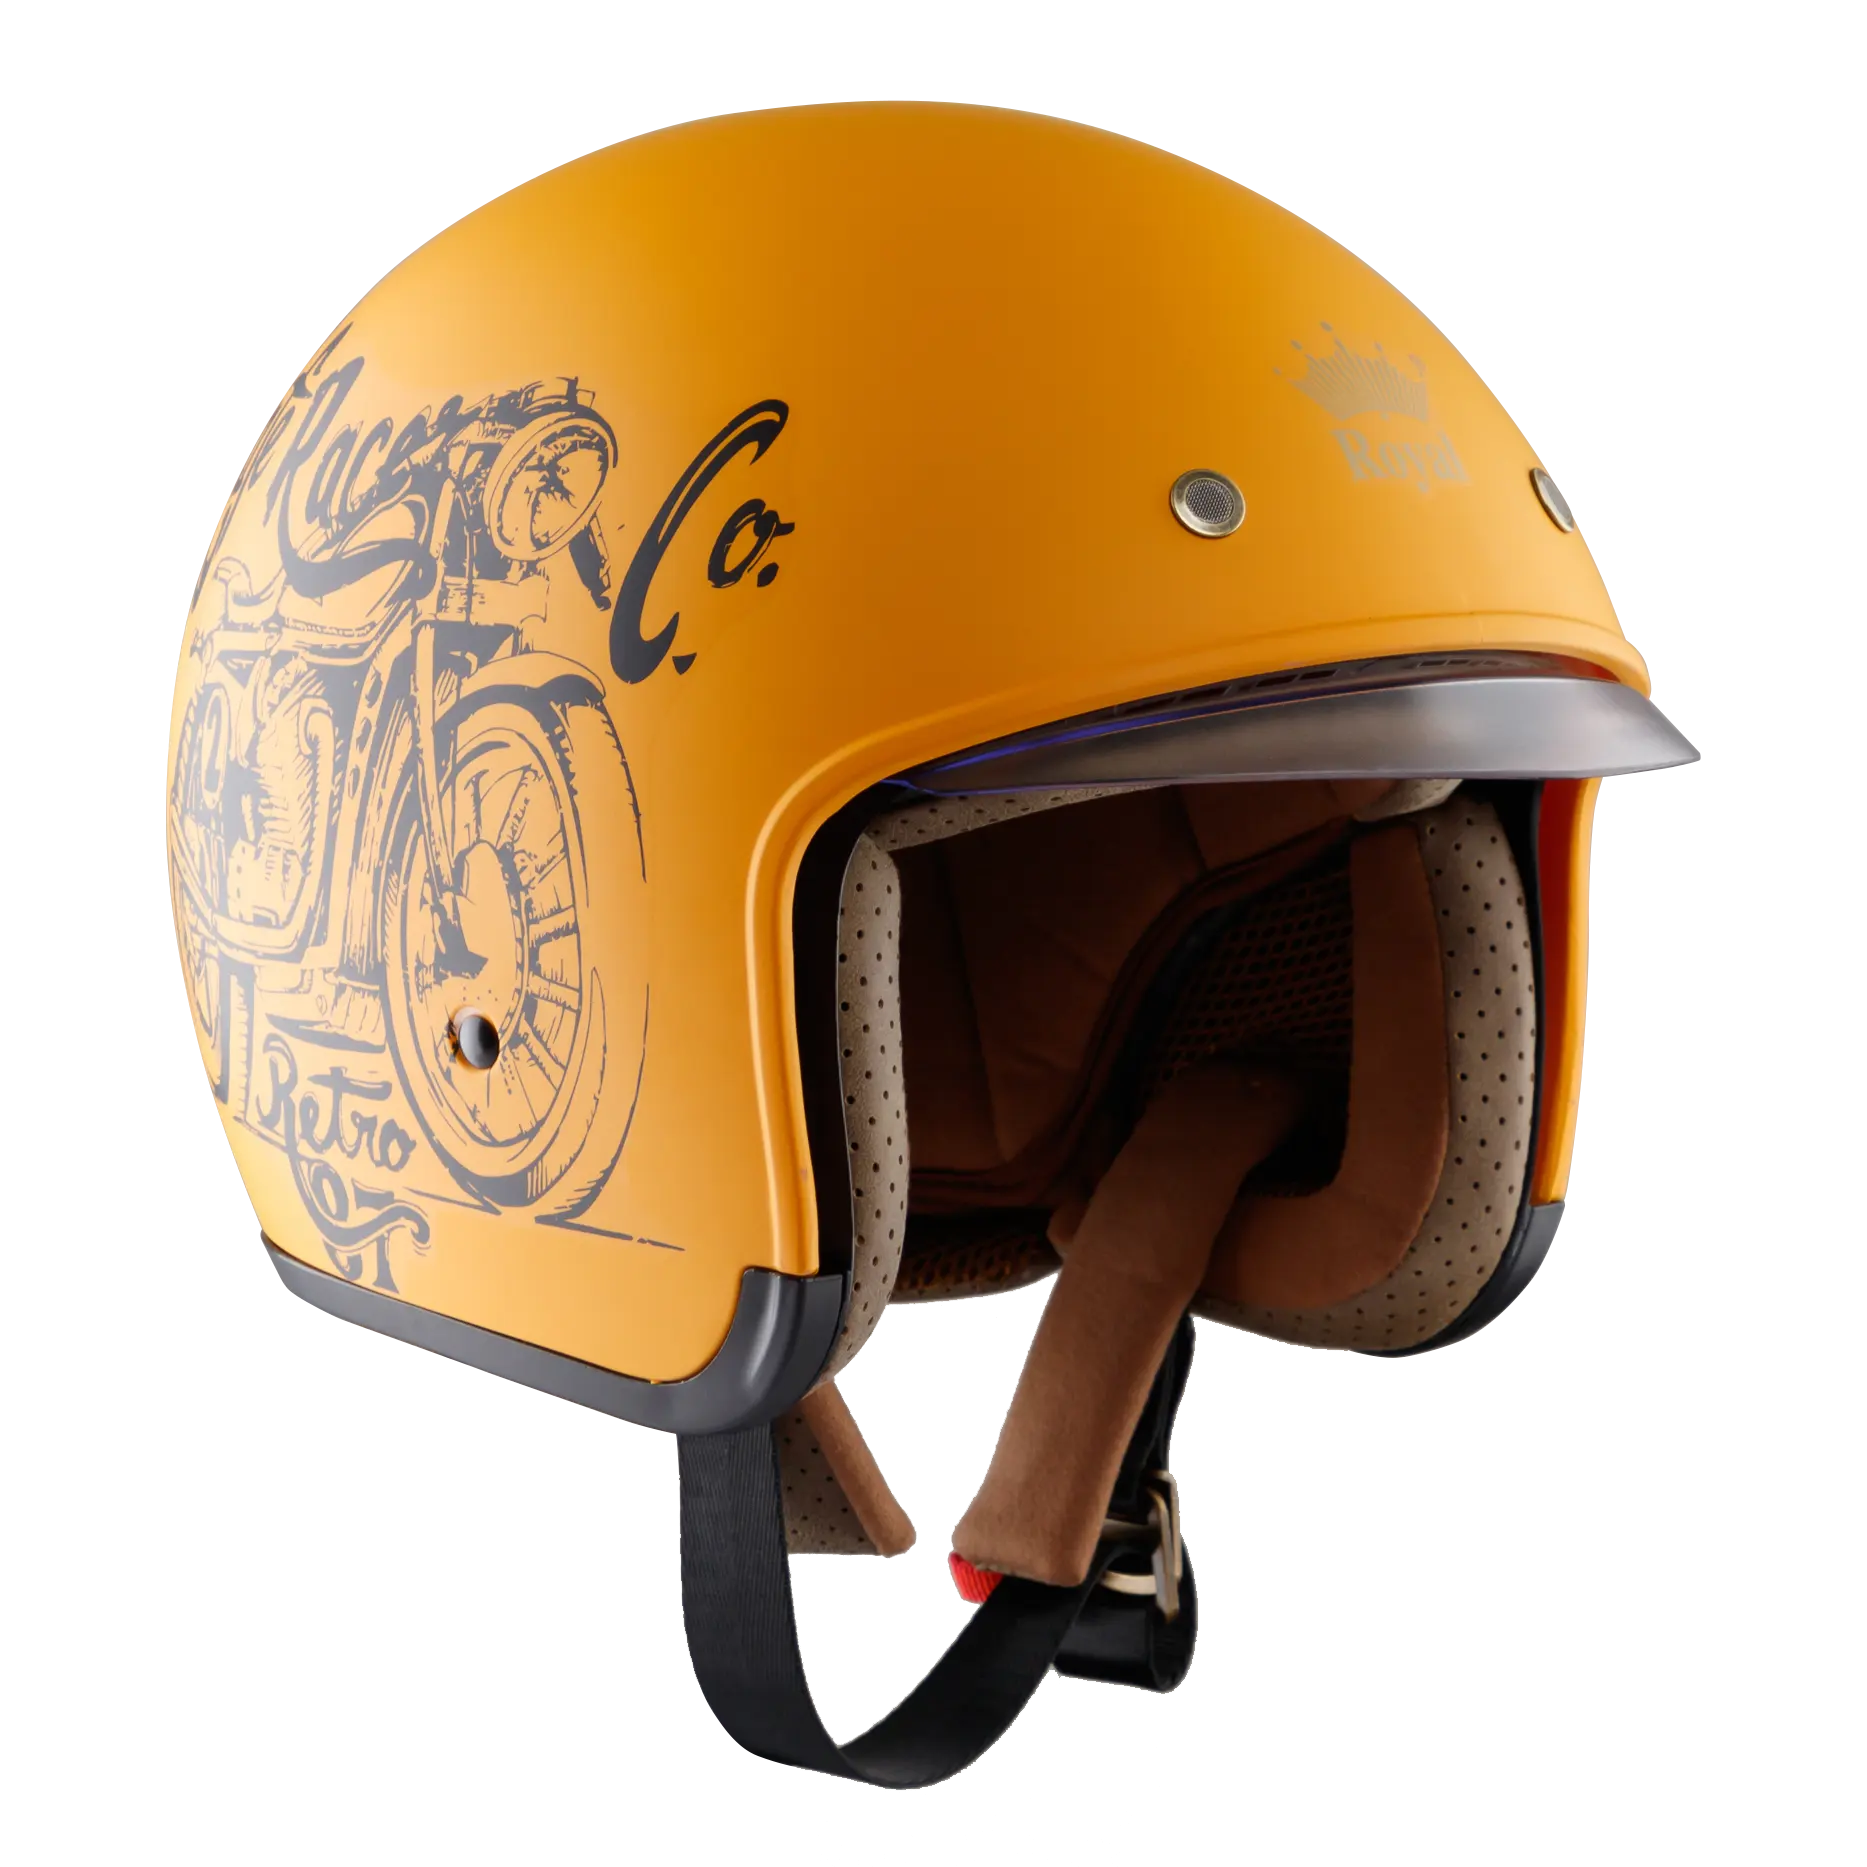 Royal M139 высококачественный продвинутый ABS скрытый козырек в стандартном морденском стиле винтажный шлем с открытым лицом для клиентов OEM